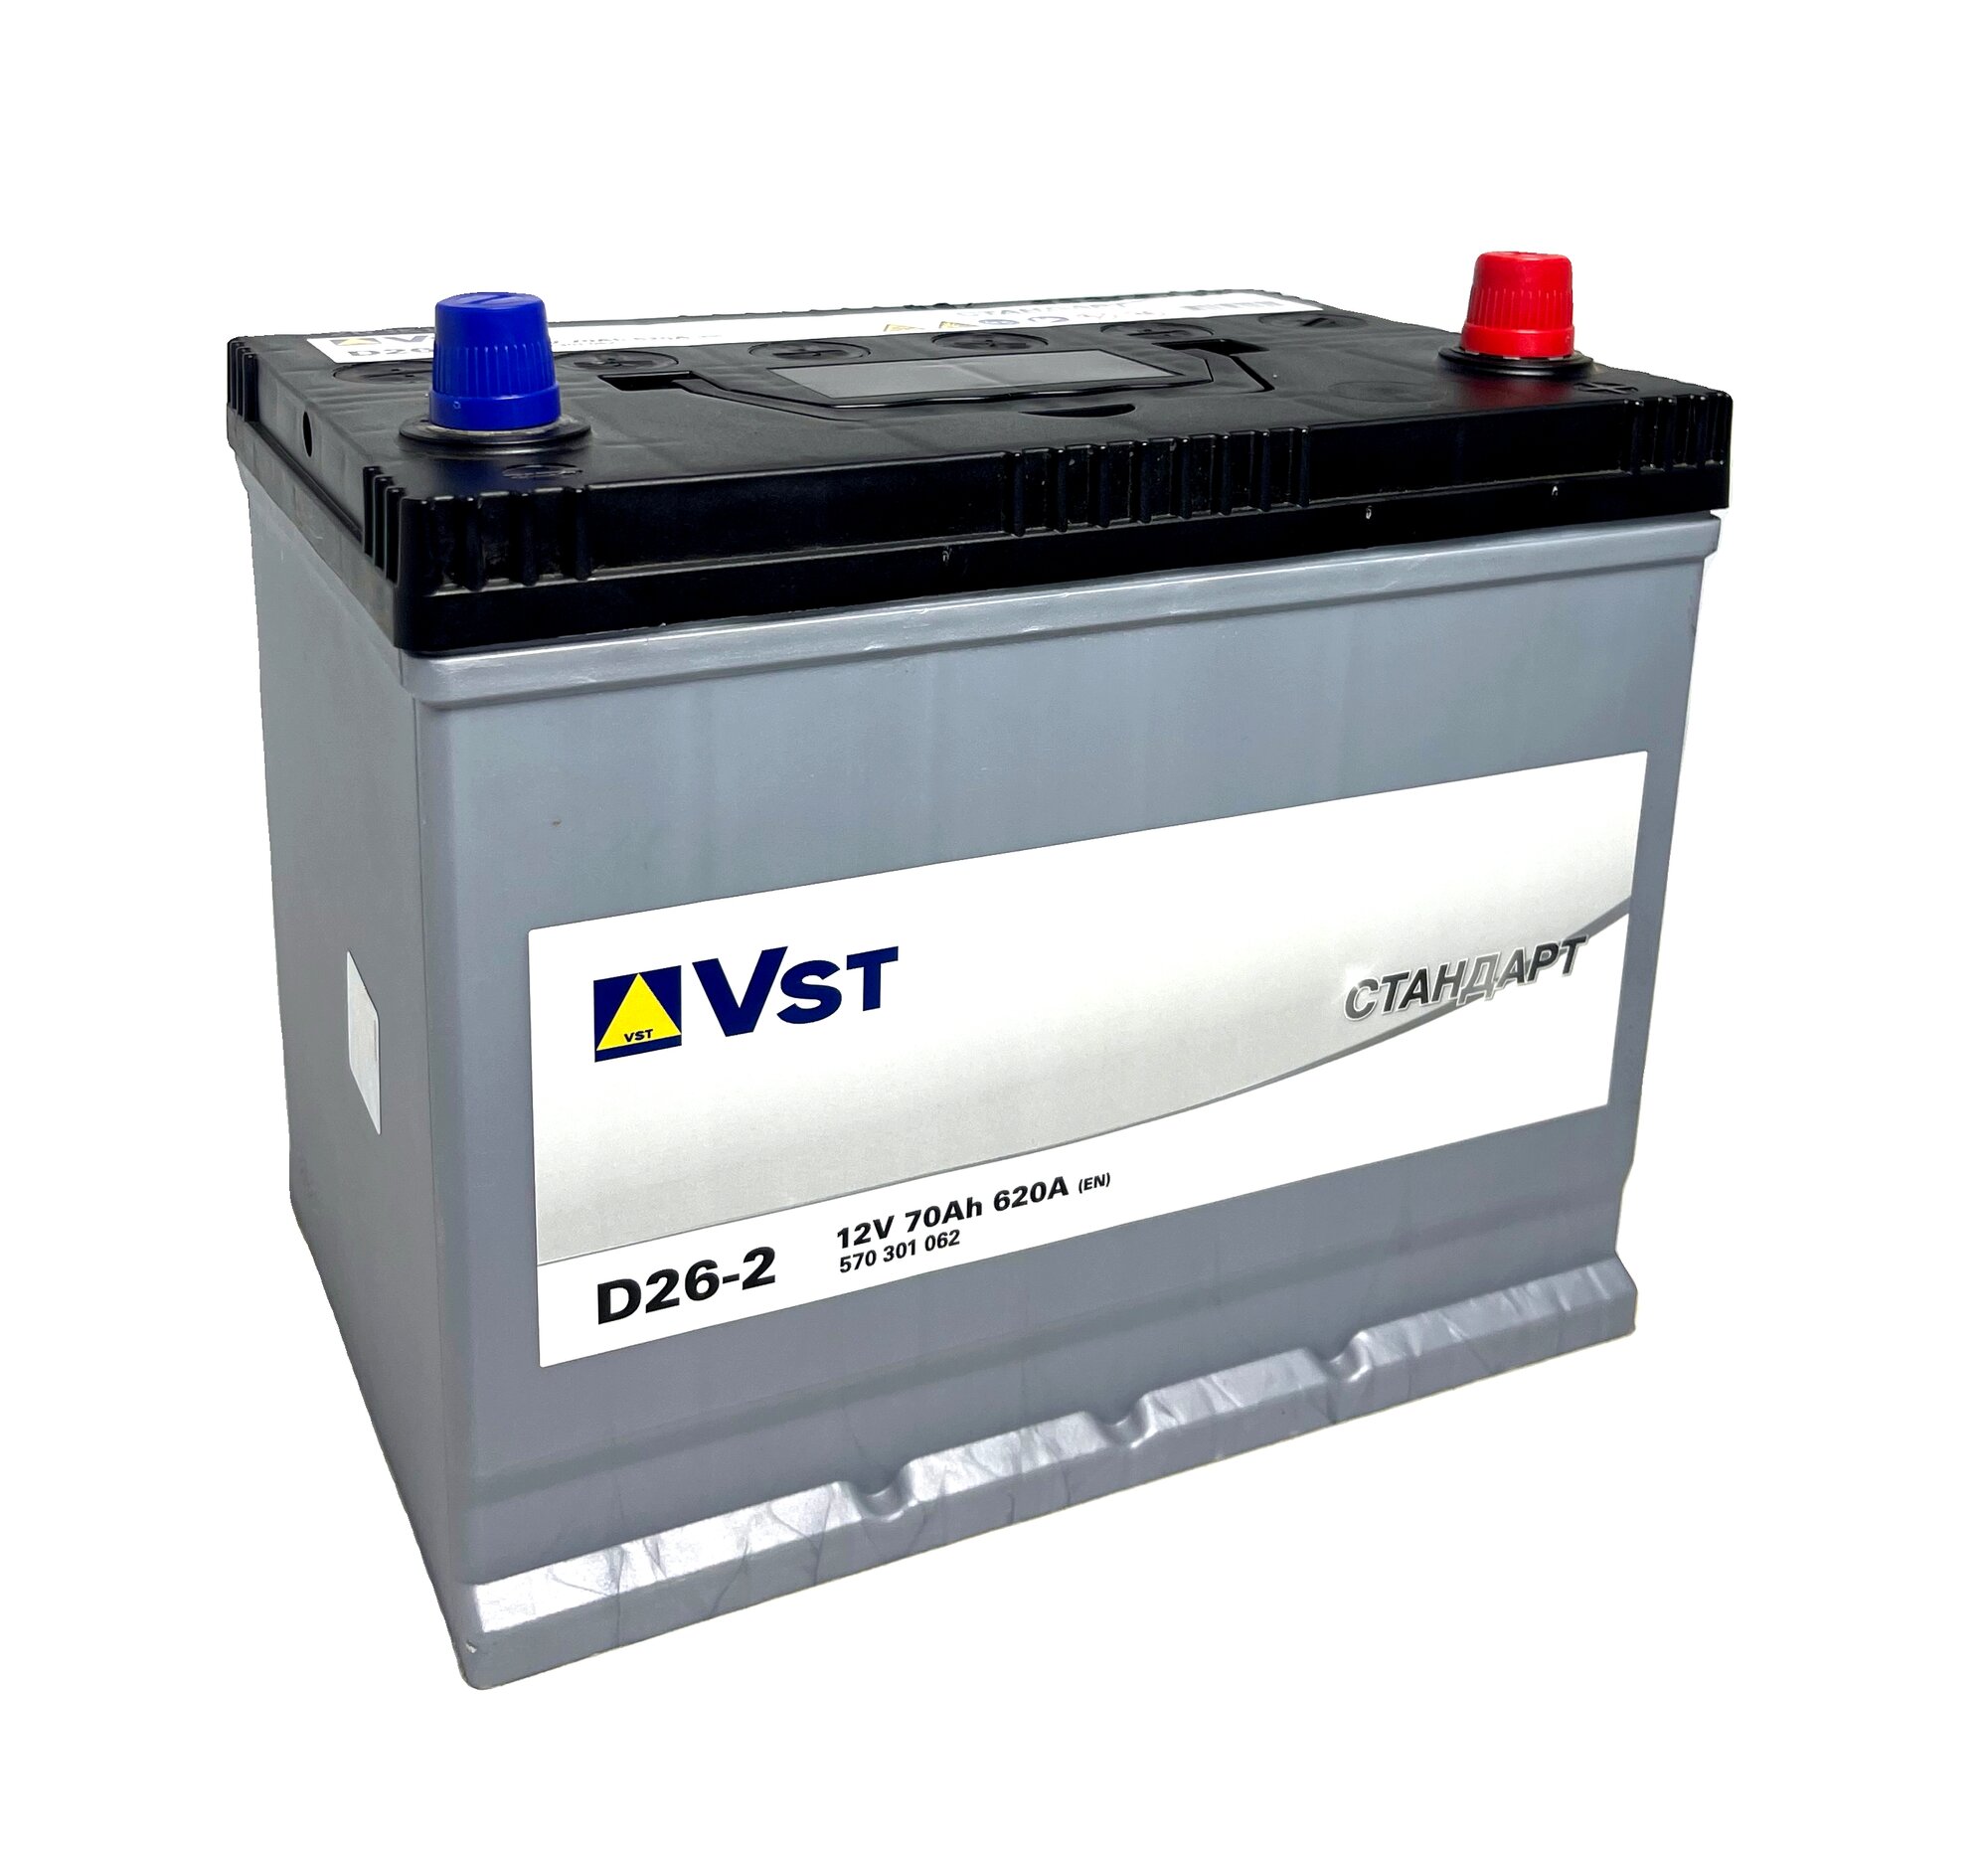 Автомобильный аккумулятор премиум класса Varta Vst Стандарт 6СТ-70.0 (570 301 062) яп.ст/бортик обратная полярность